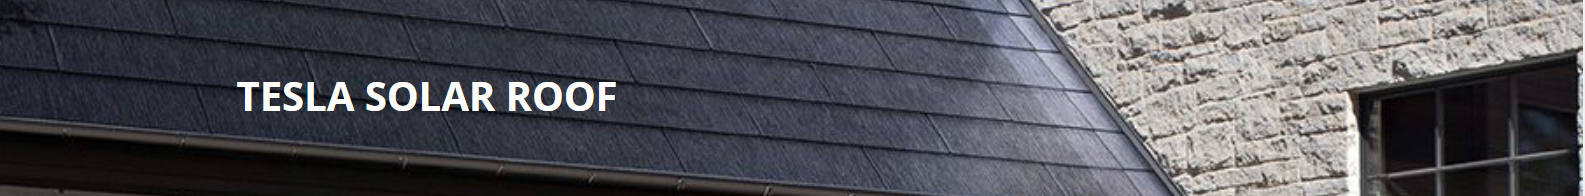 Tesla Solar Roof - Clean Solar, Inc, CA